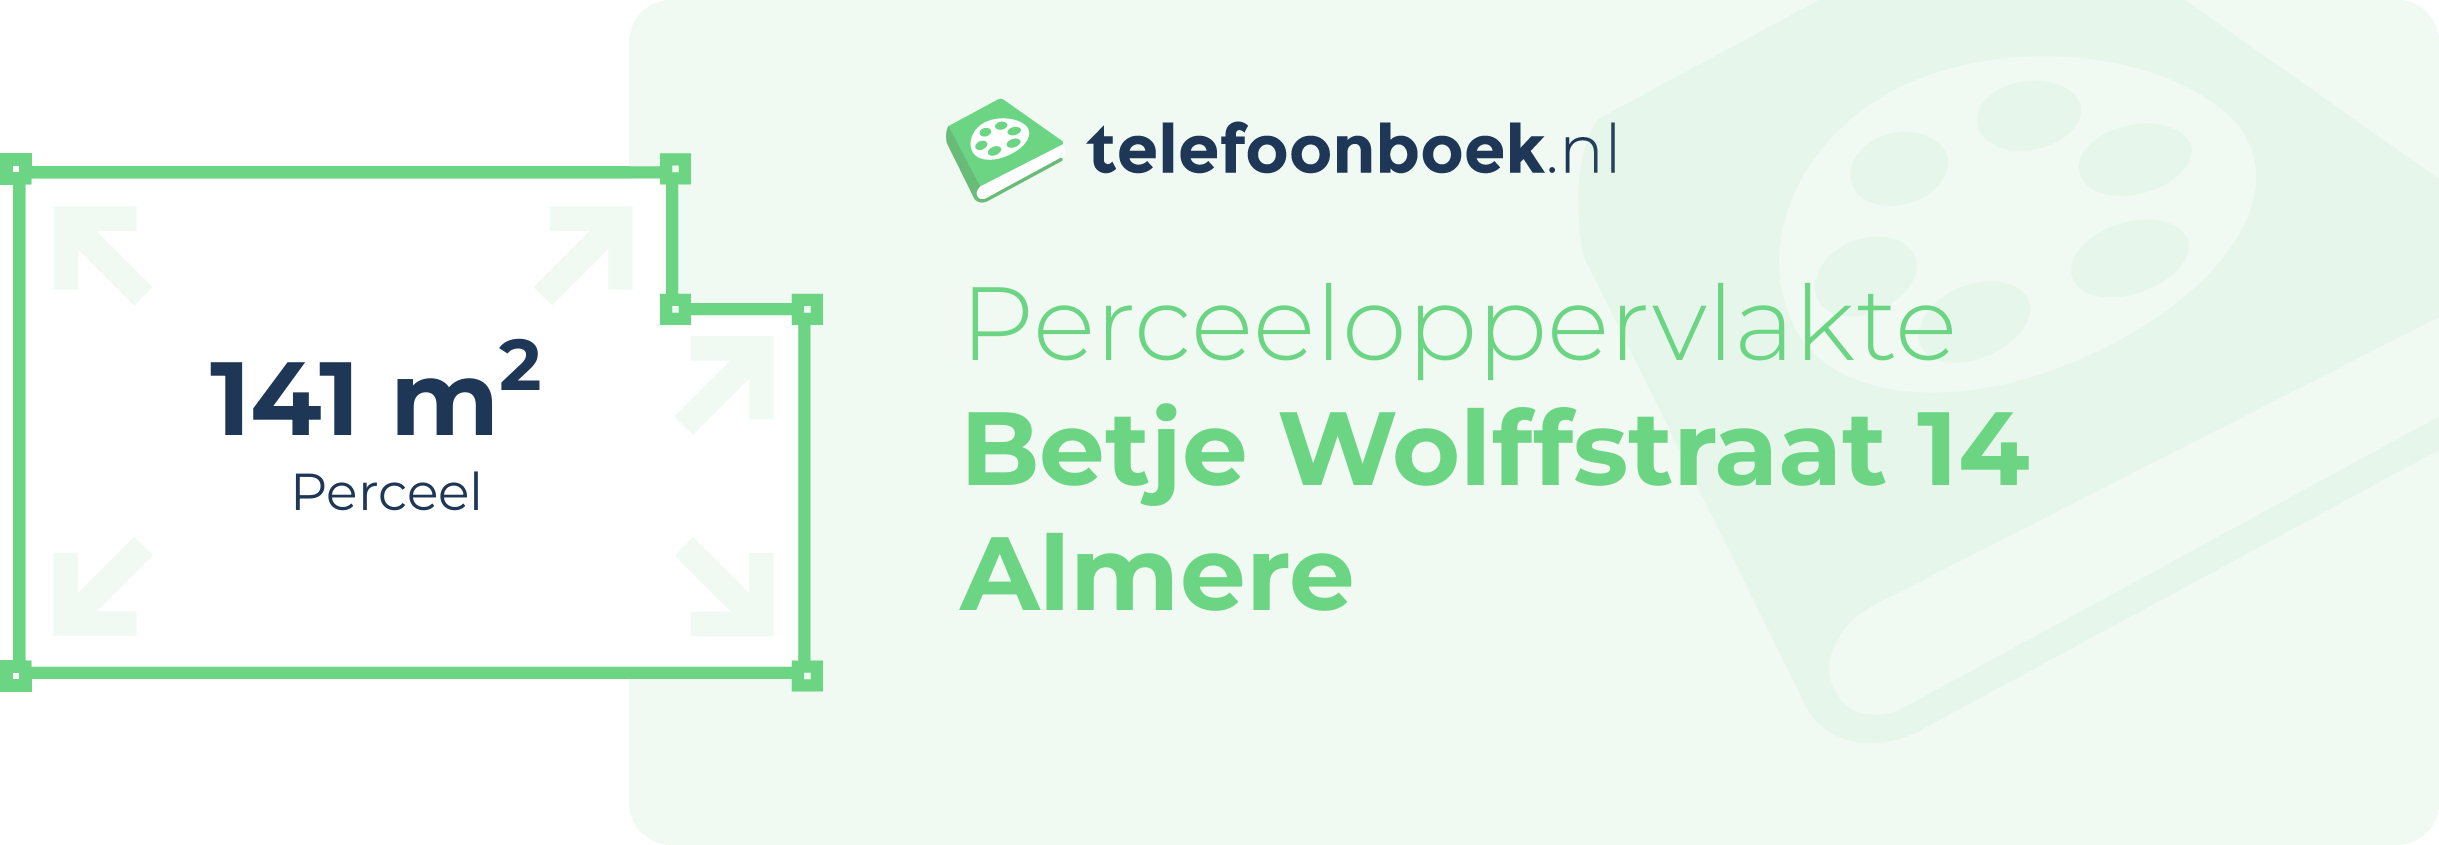 Perceeloppervlakte Betje Wolffstraat 14 Almere